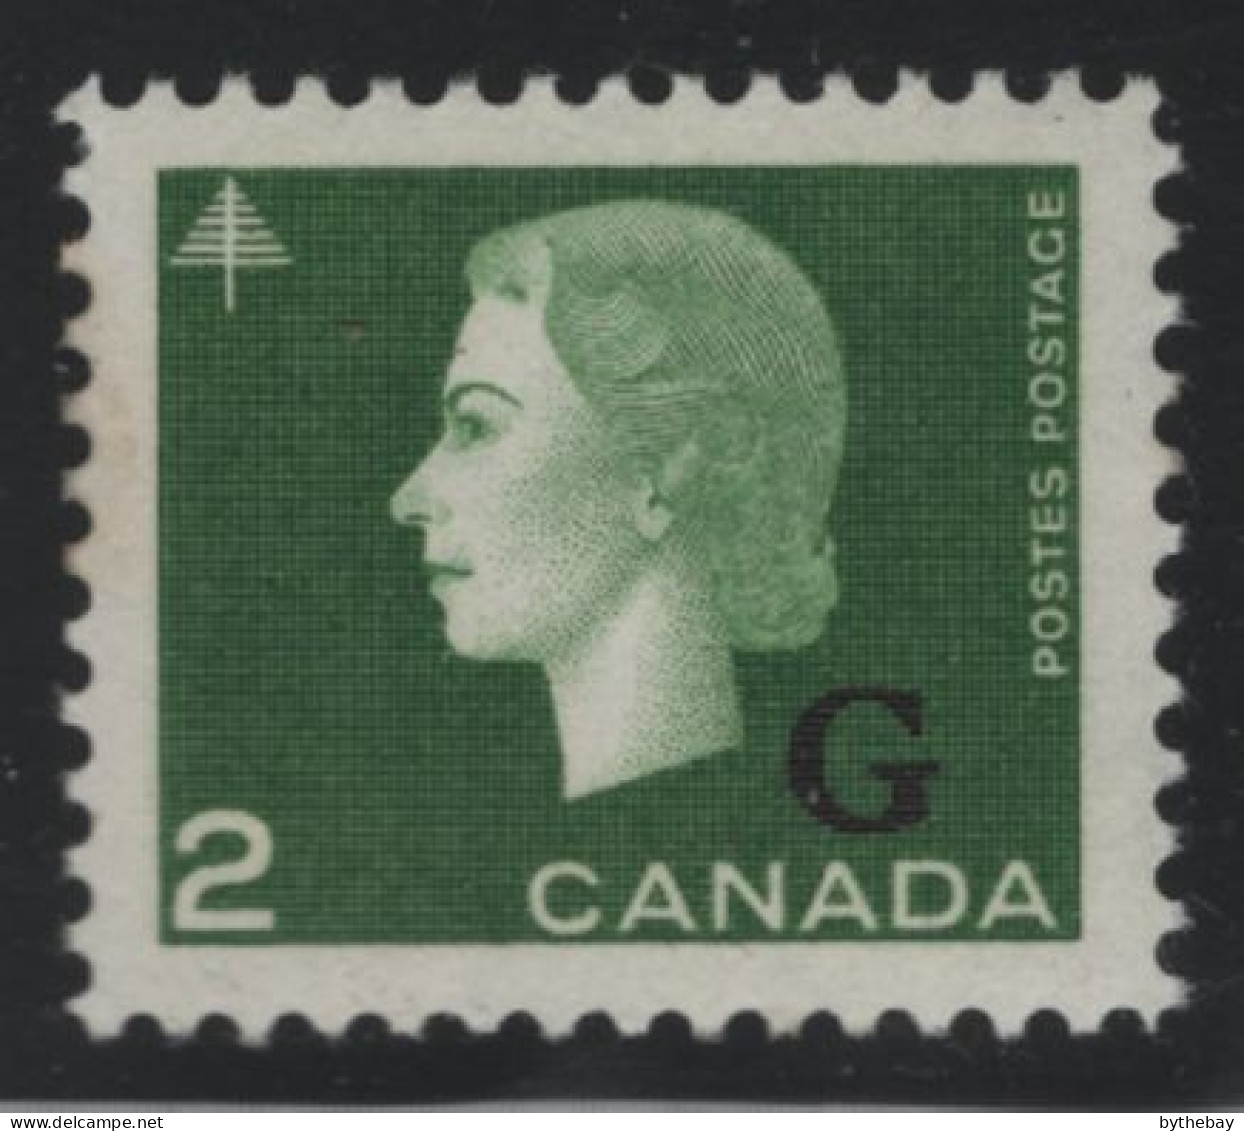 Canada 1963 MNH Sc O47 2c QEII Cameo G Overprint, Glazed Gum - Overprinted